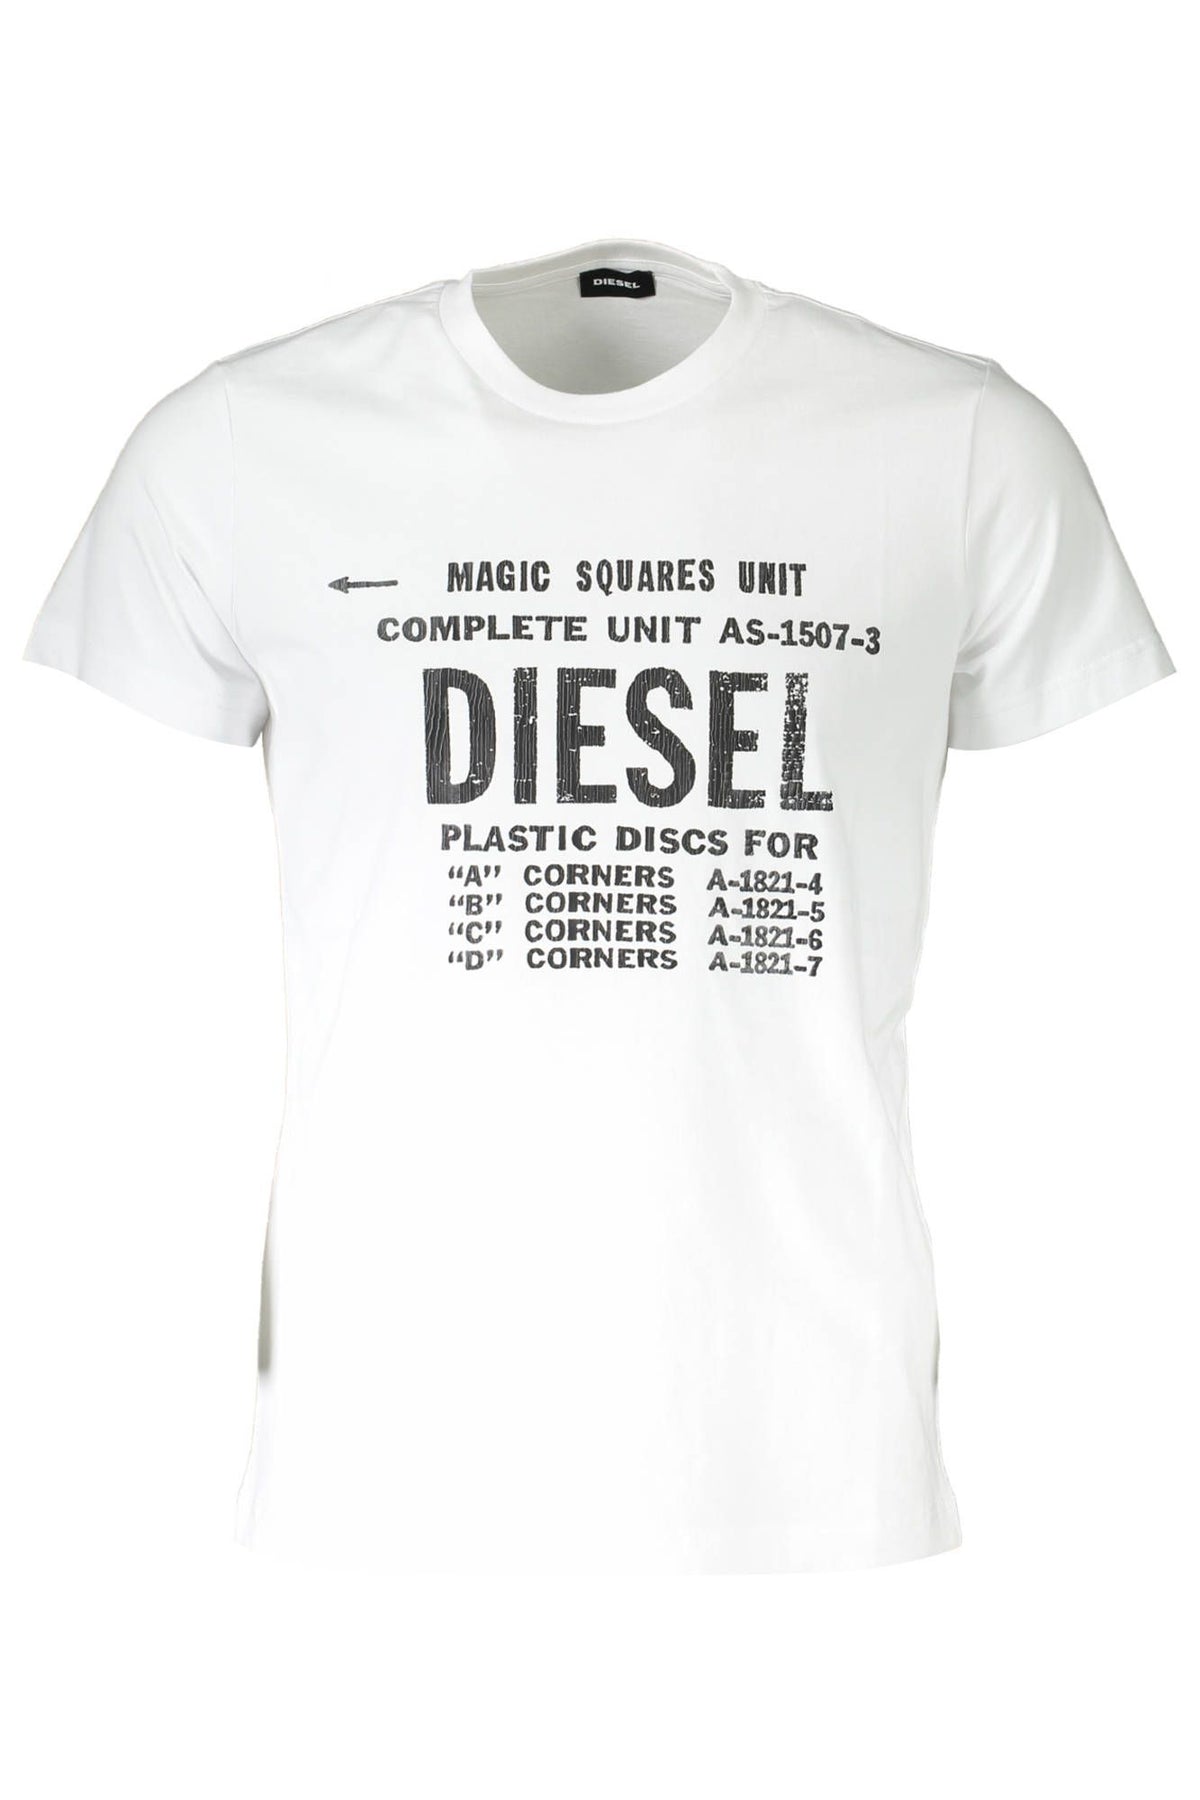 Diesel Sleek White Printed Crew Neck Tee